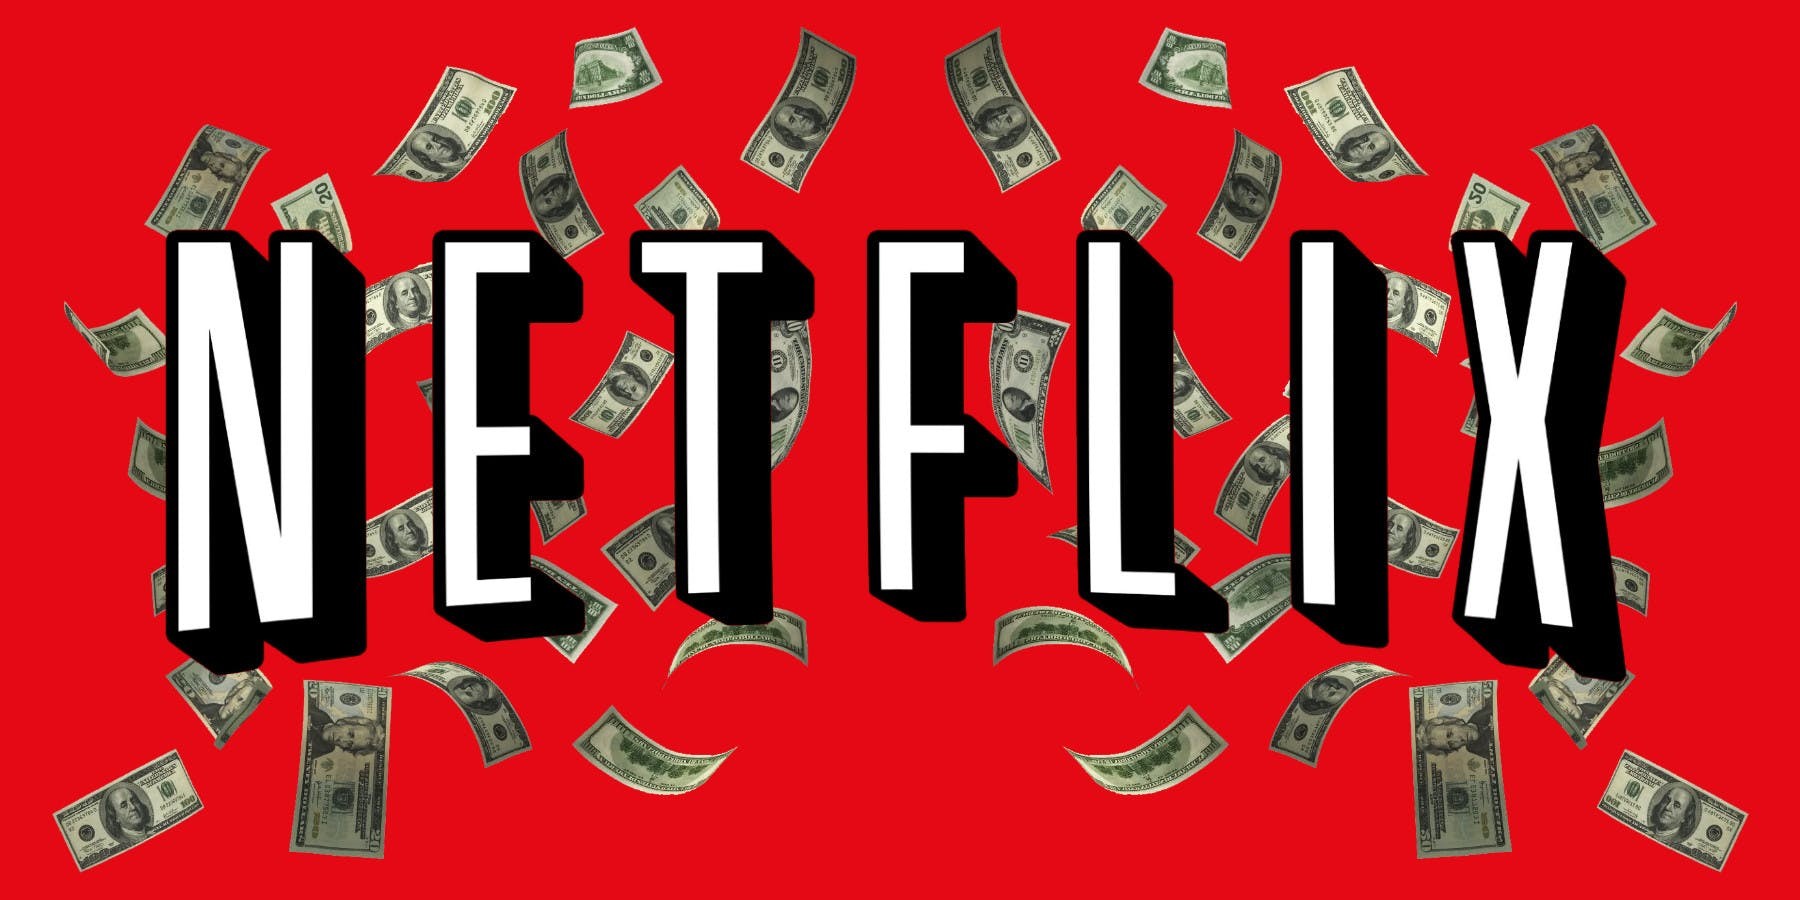 Como pagar Netflix, Spotify, HBO Go e outros streamings sem cartão